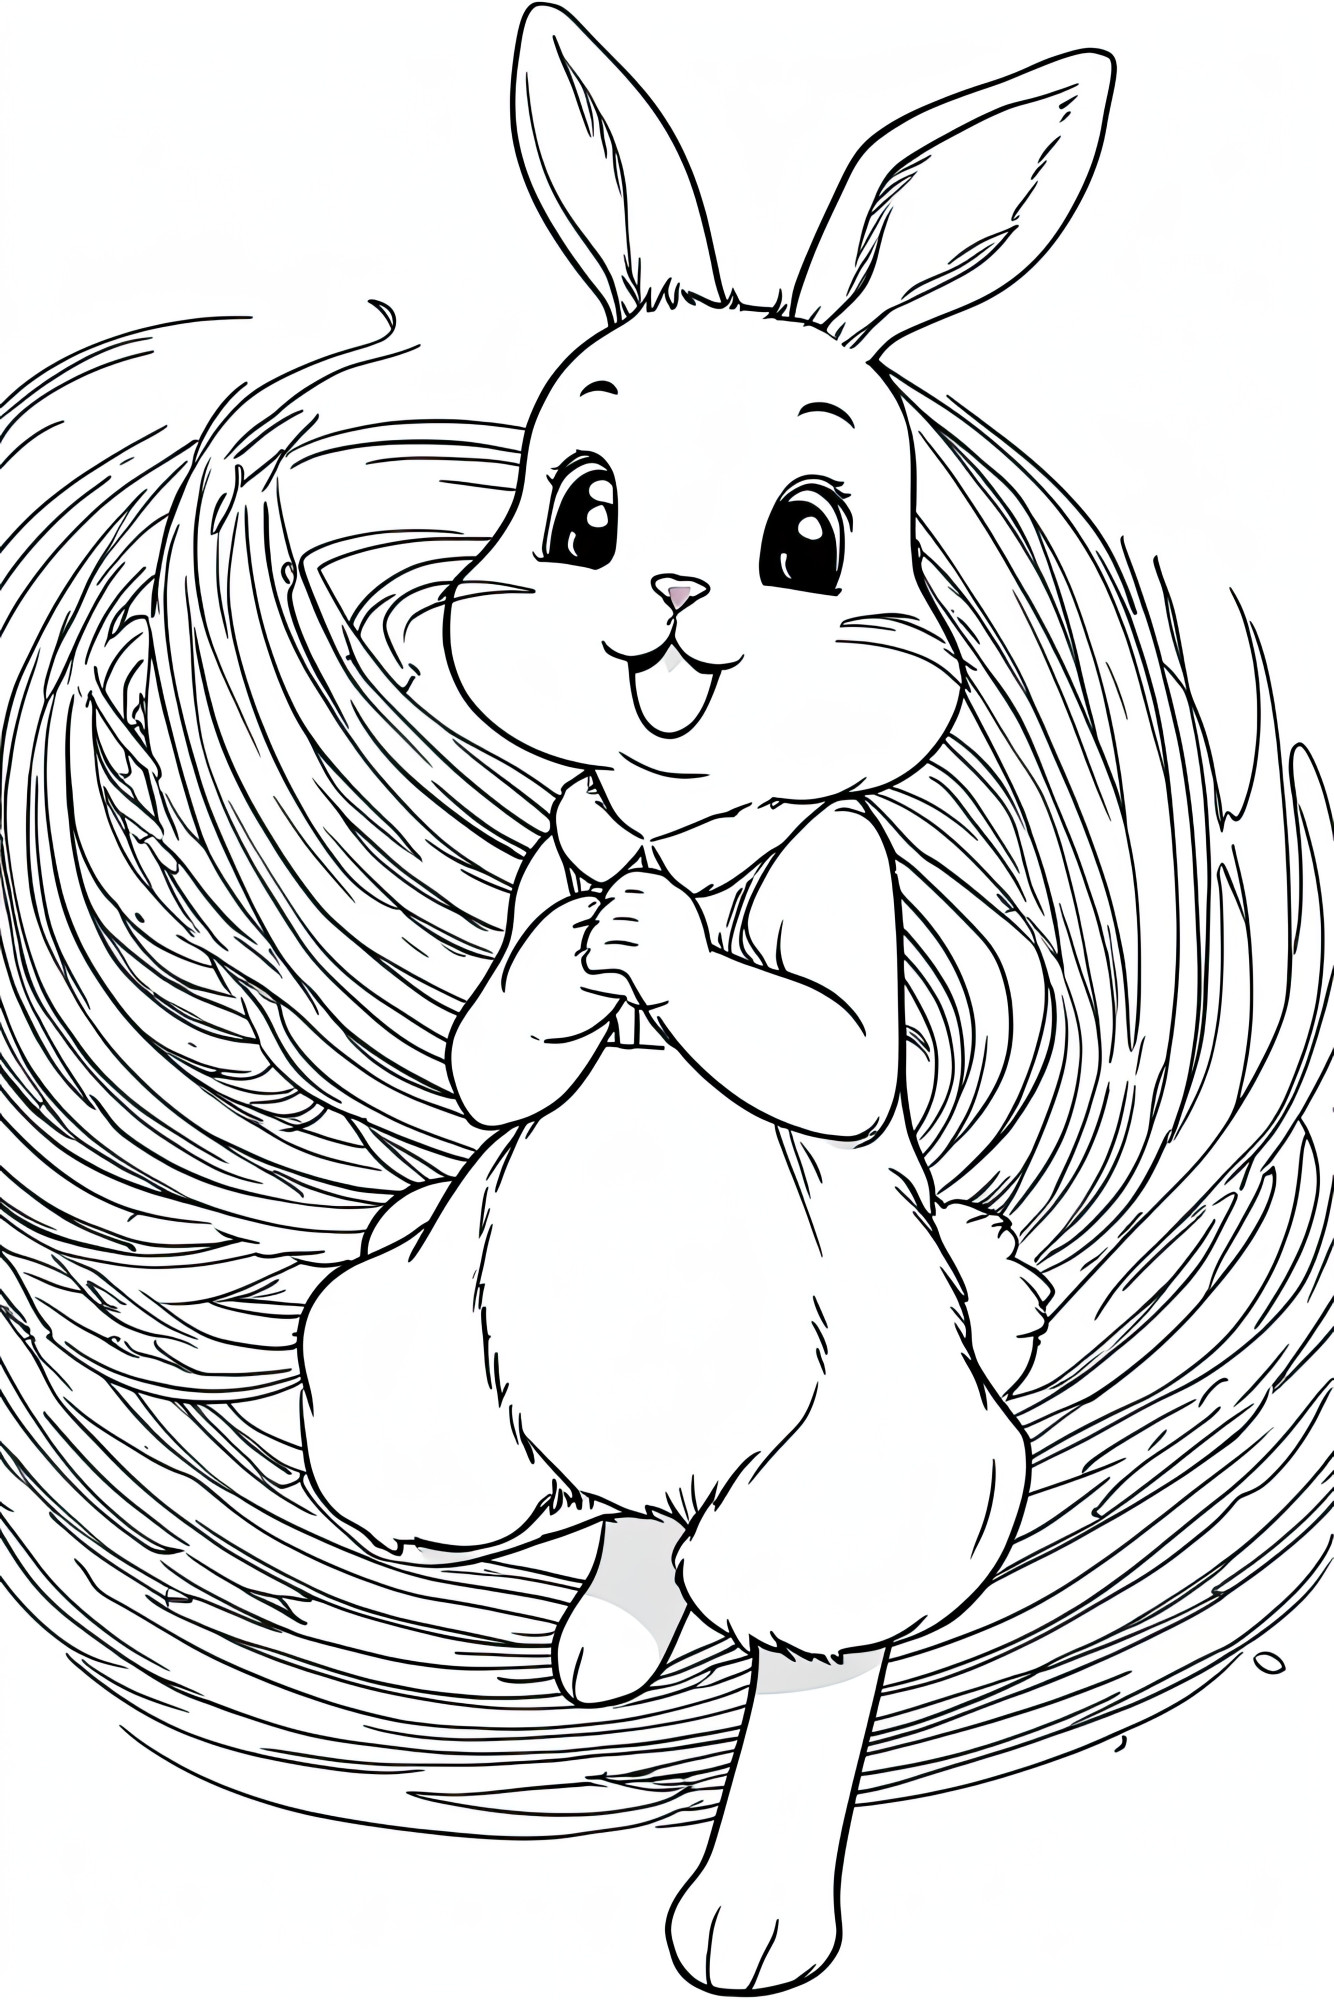 Раскраска для детей: сказочный зайчик в стогу сена